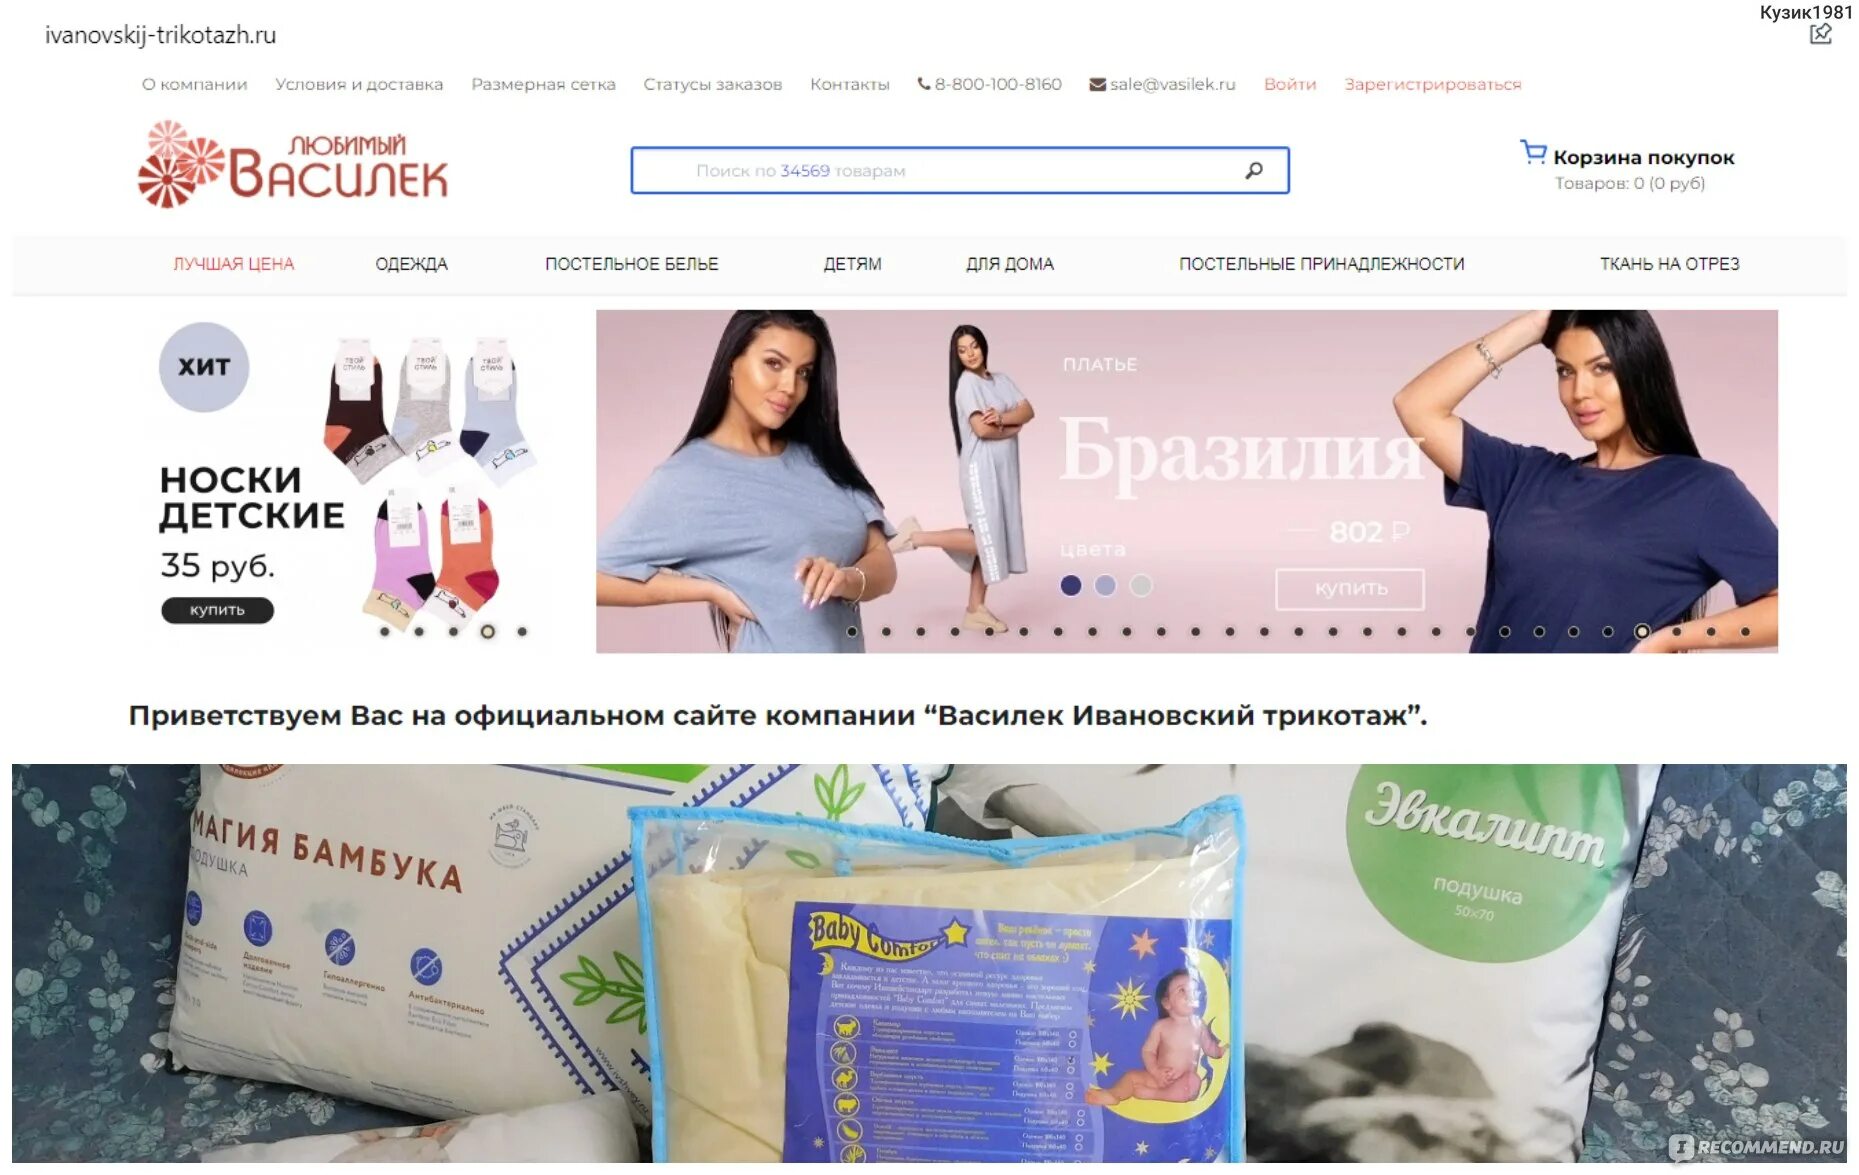 Сайт интернет магазина василек ивановский